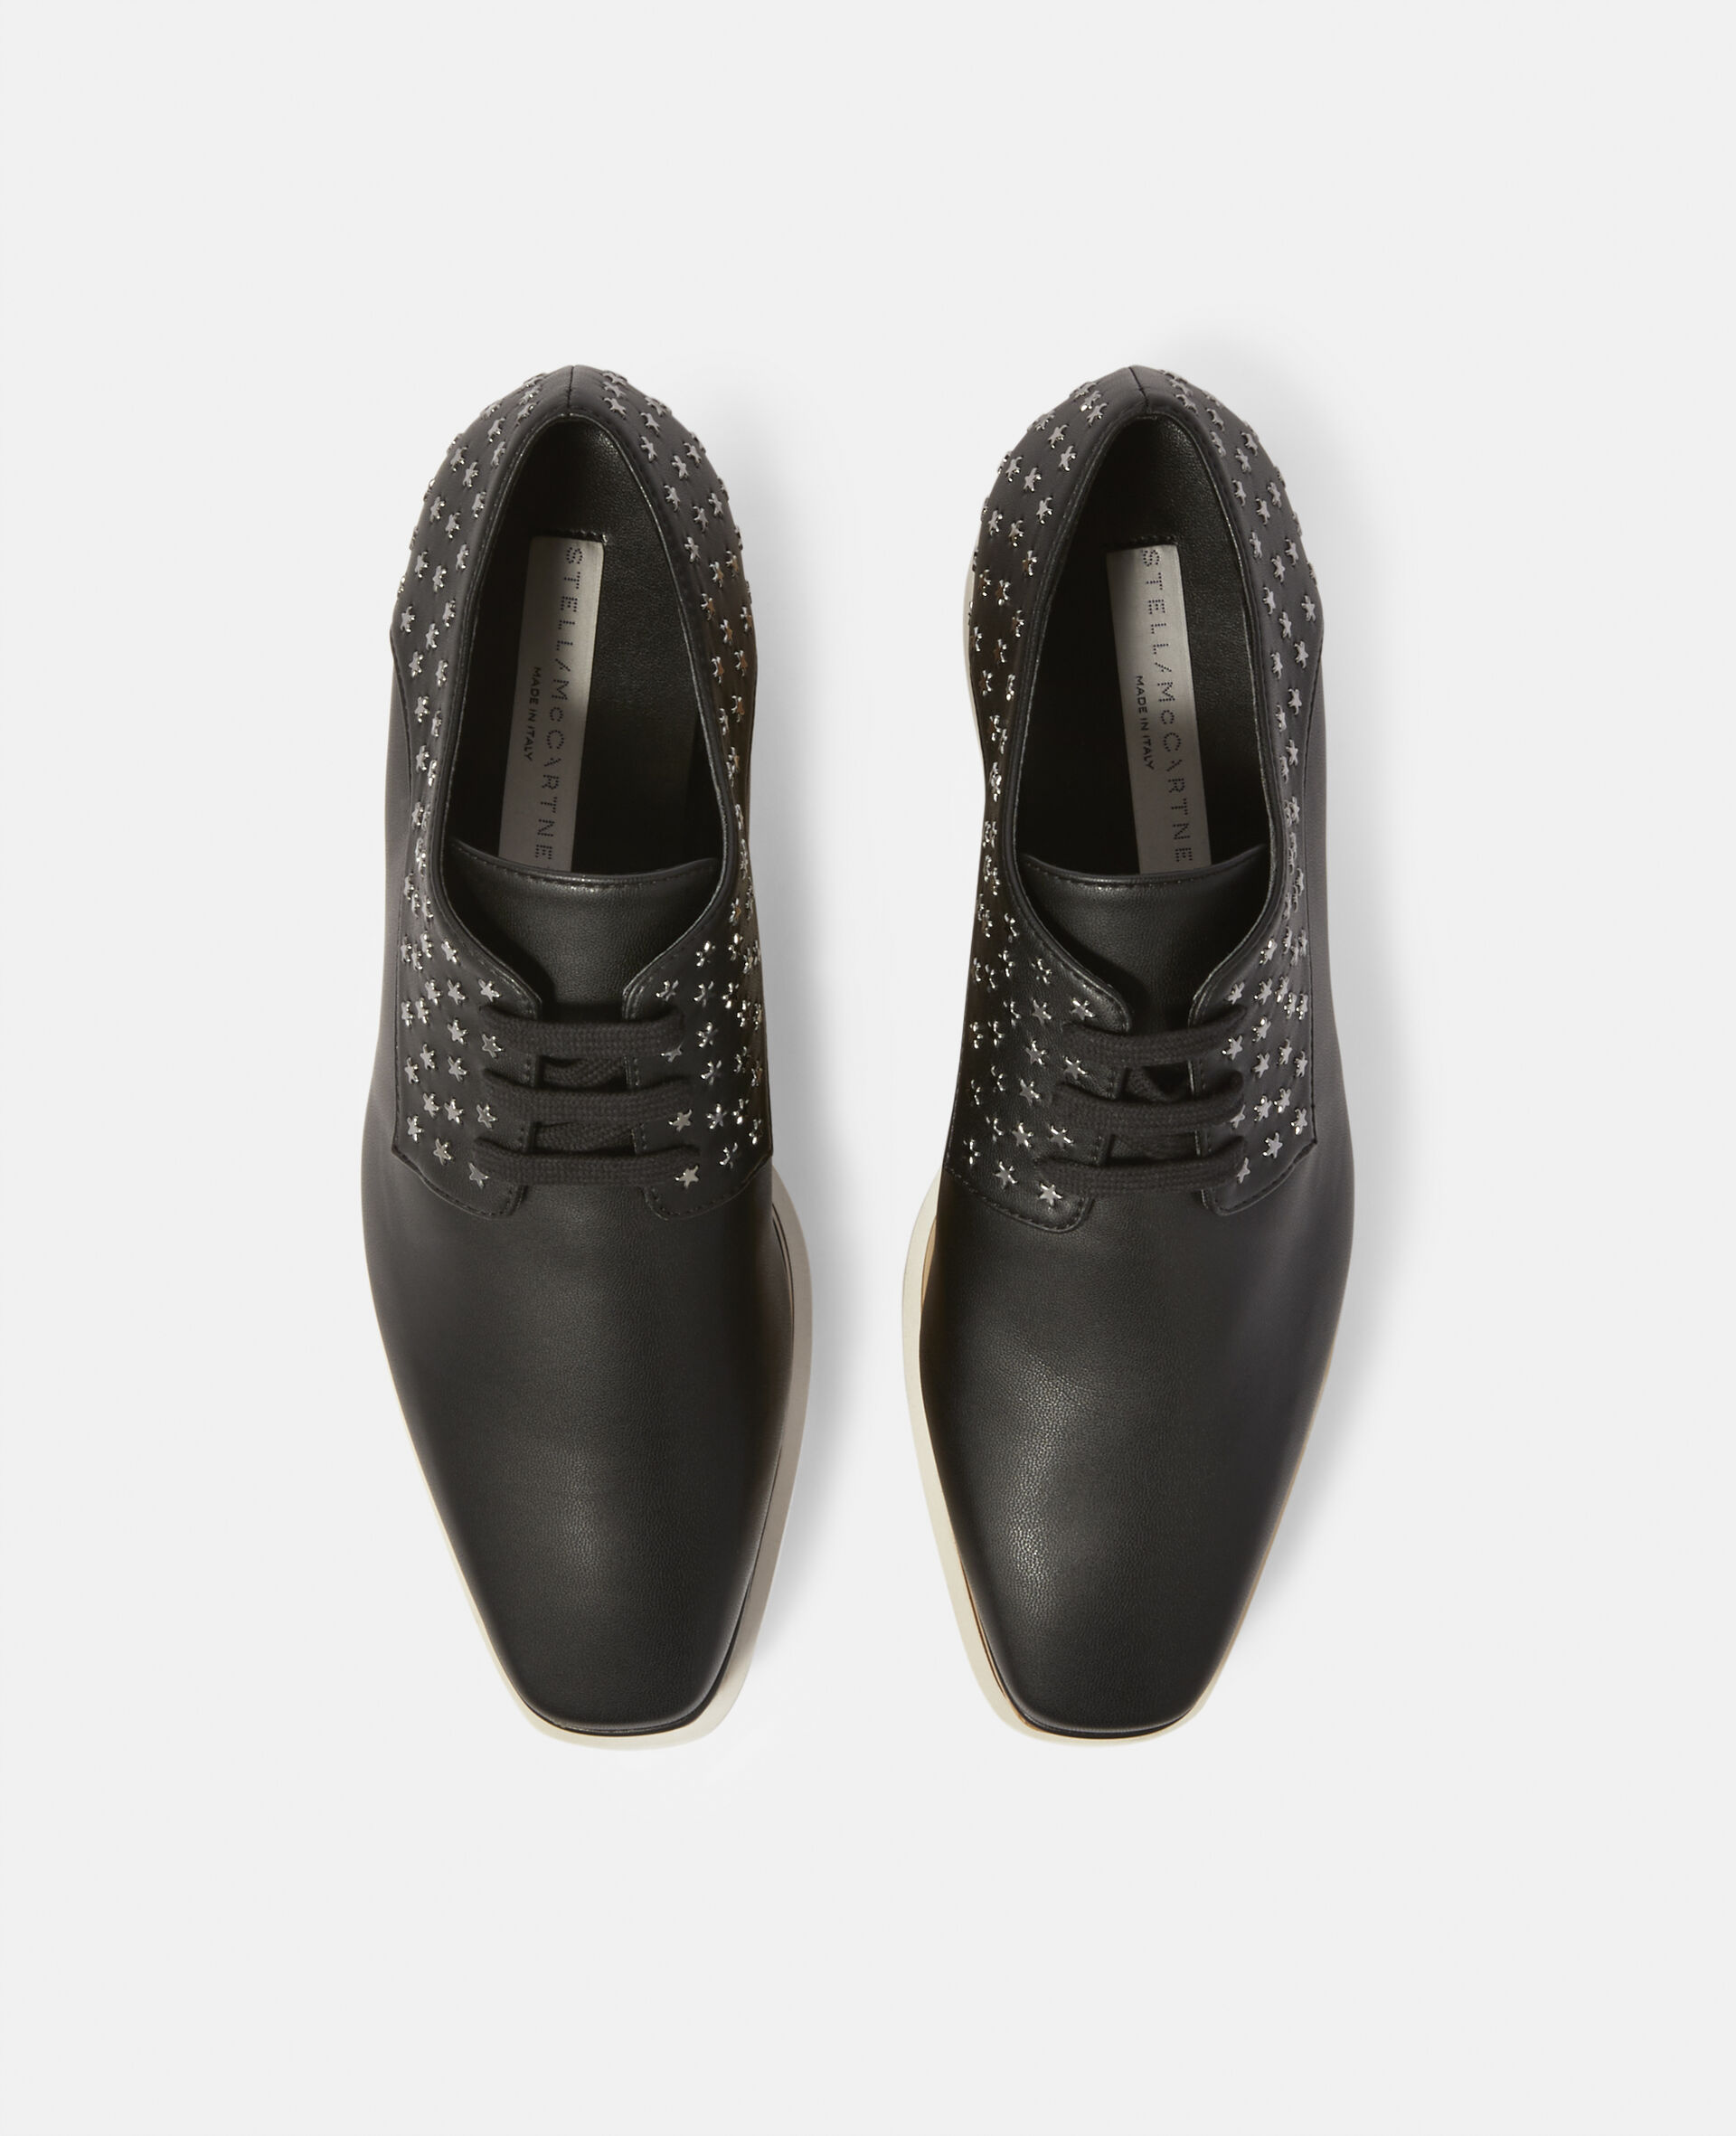 Elyse Star Studs Platform Shoes-Black-large image number 3